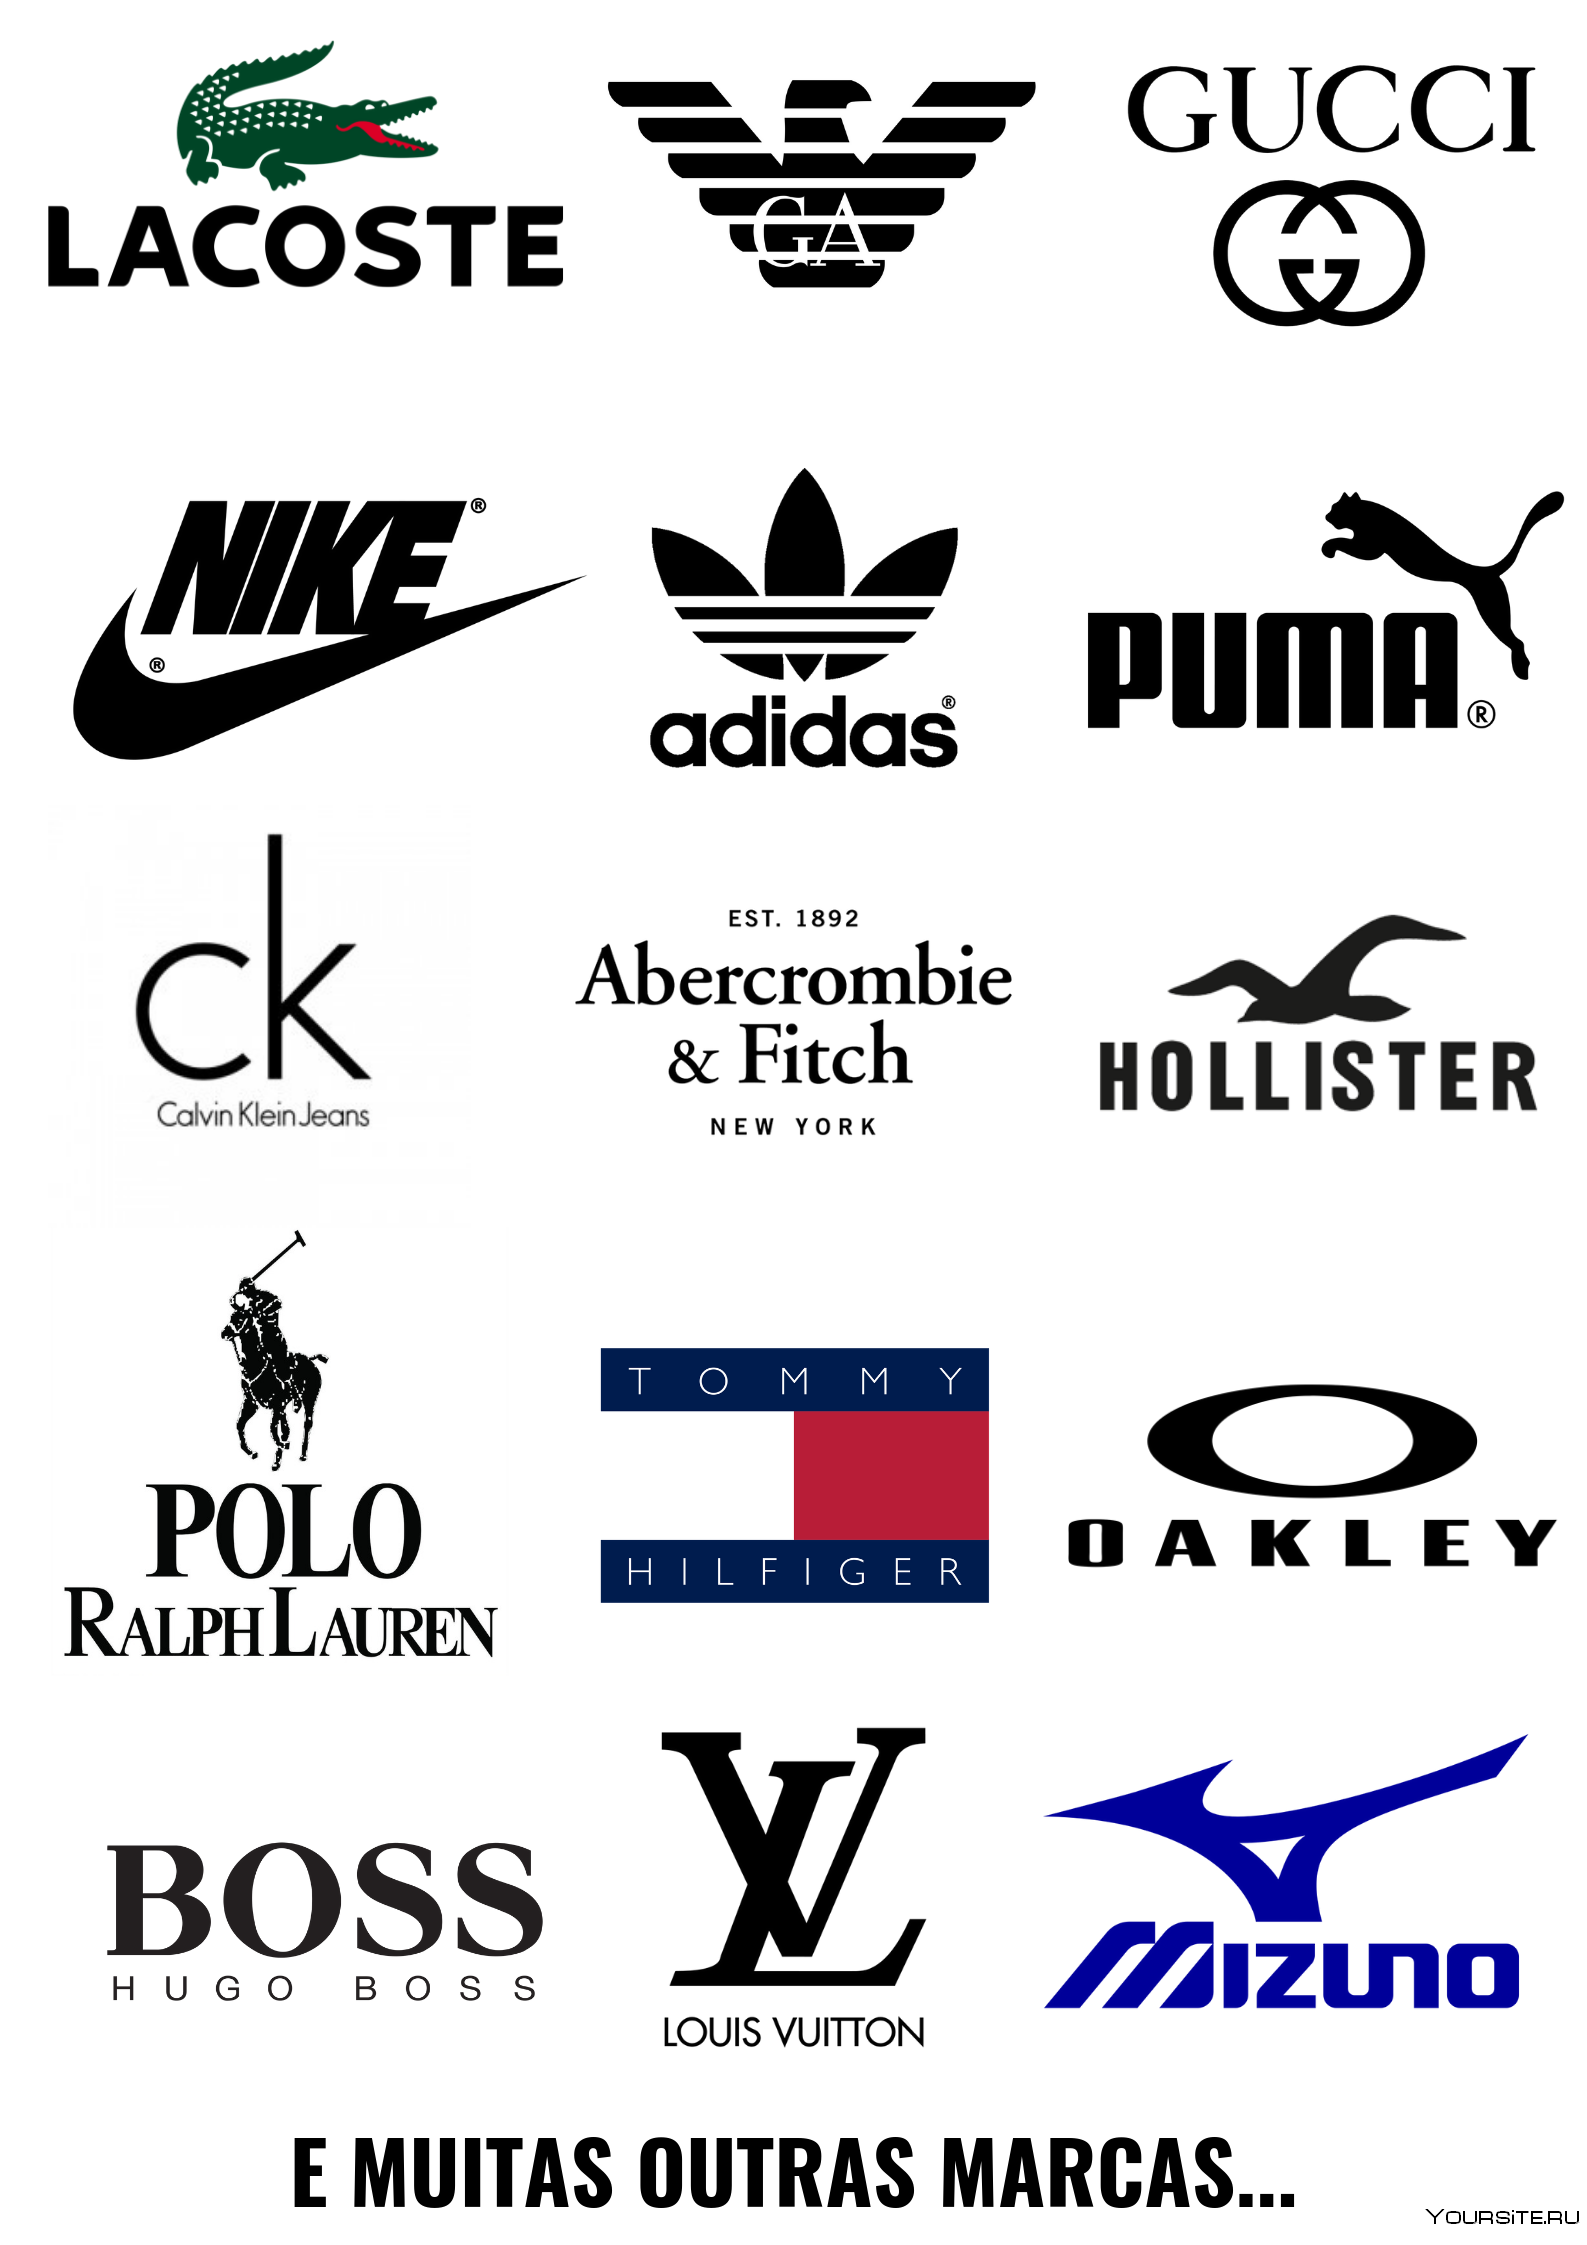 Фирма одежды и обуви. Спортивные марки одежды. Фирмы спортивной одежды. Бренды спортивной одежды. Бренды спортивной одежды логотипы.